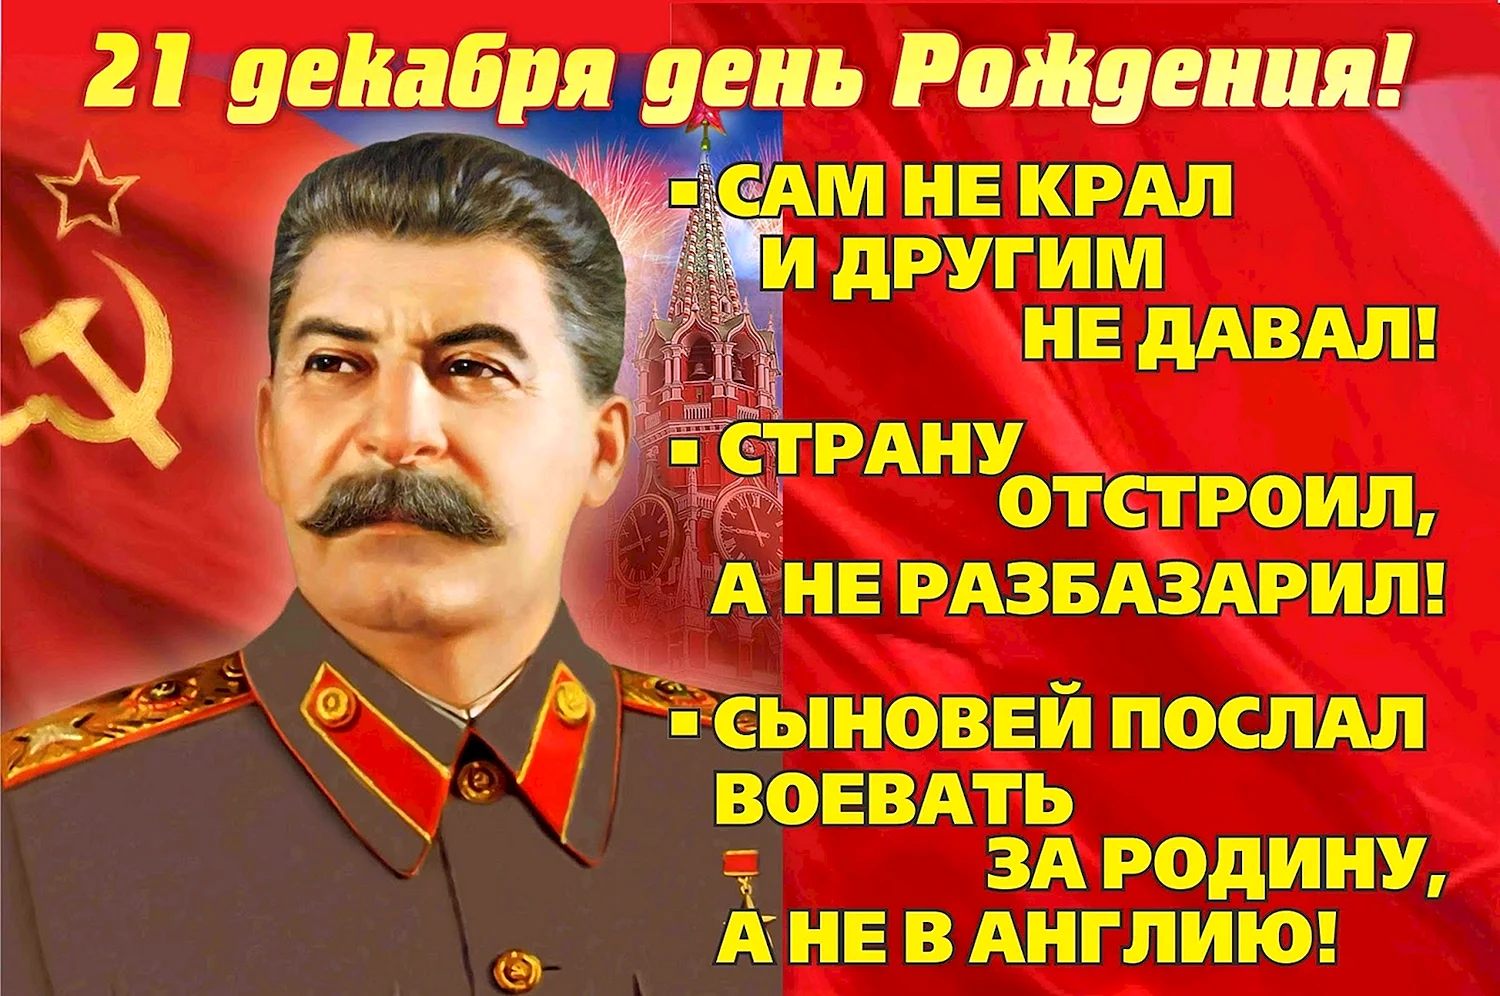 Дата рождения Сталина Иосифа Виссарионовича